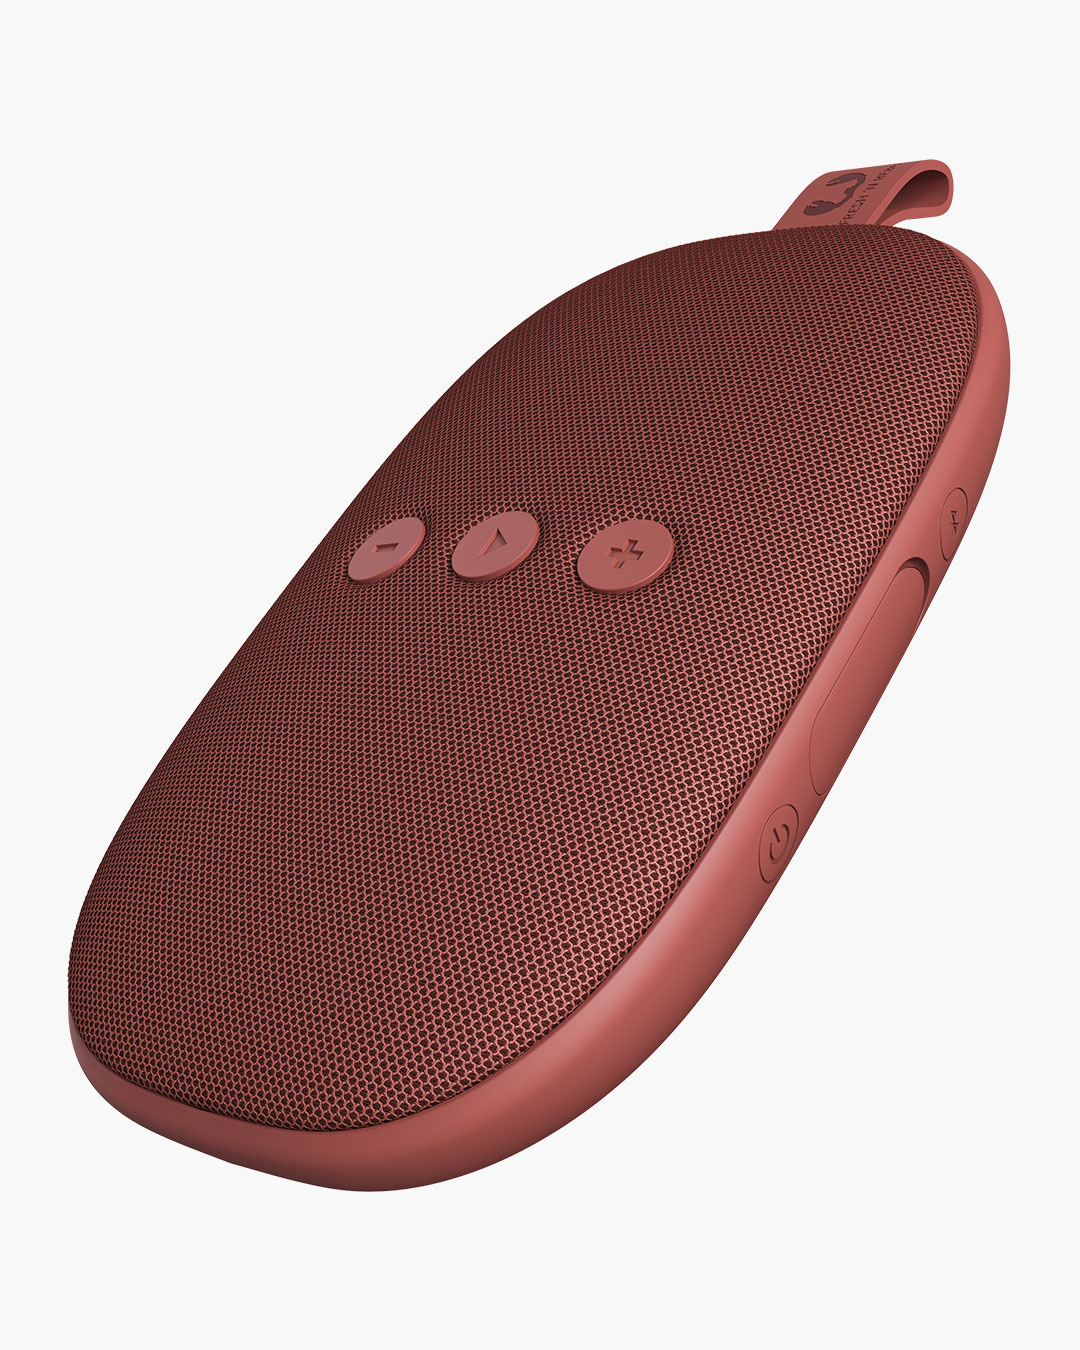 Fresh 'n Rebel - Rockbox Bold X - Wireless Bluetooth speaker - Safari Red